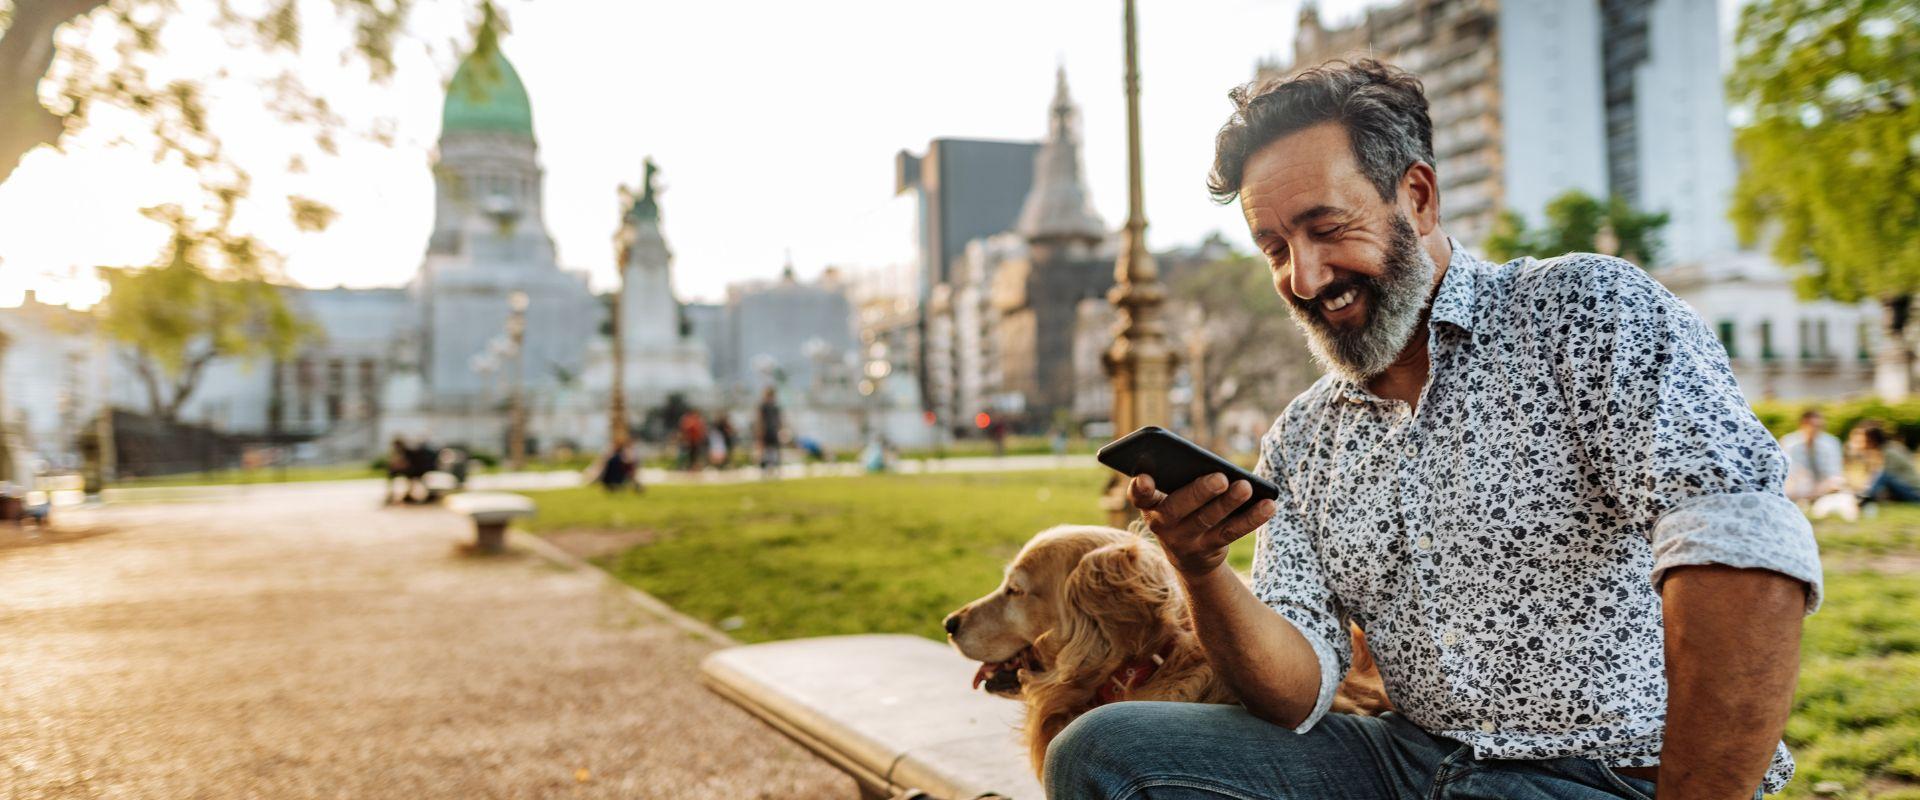 Hombre sentado en un parque con su perro mirando su teléfono